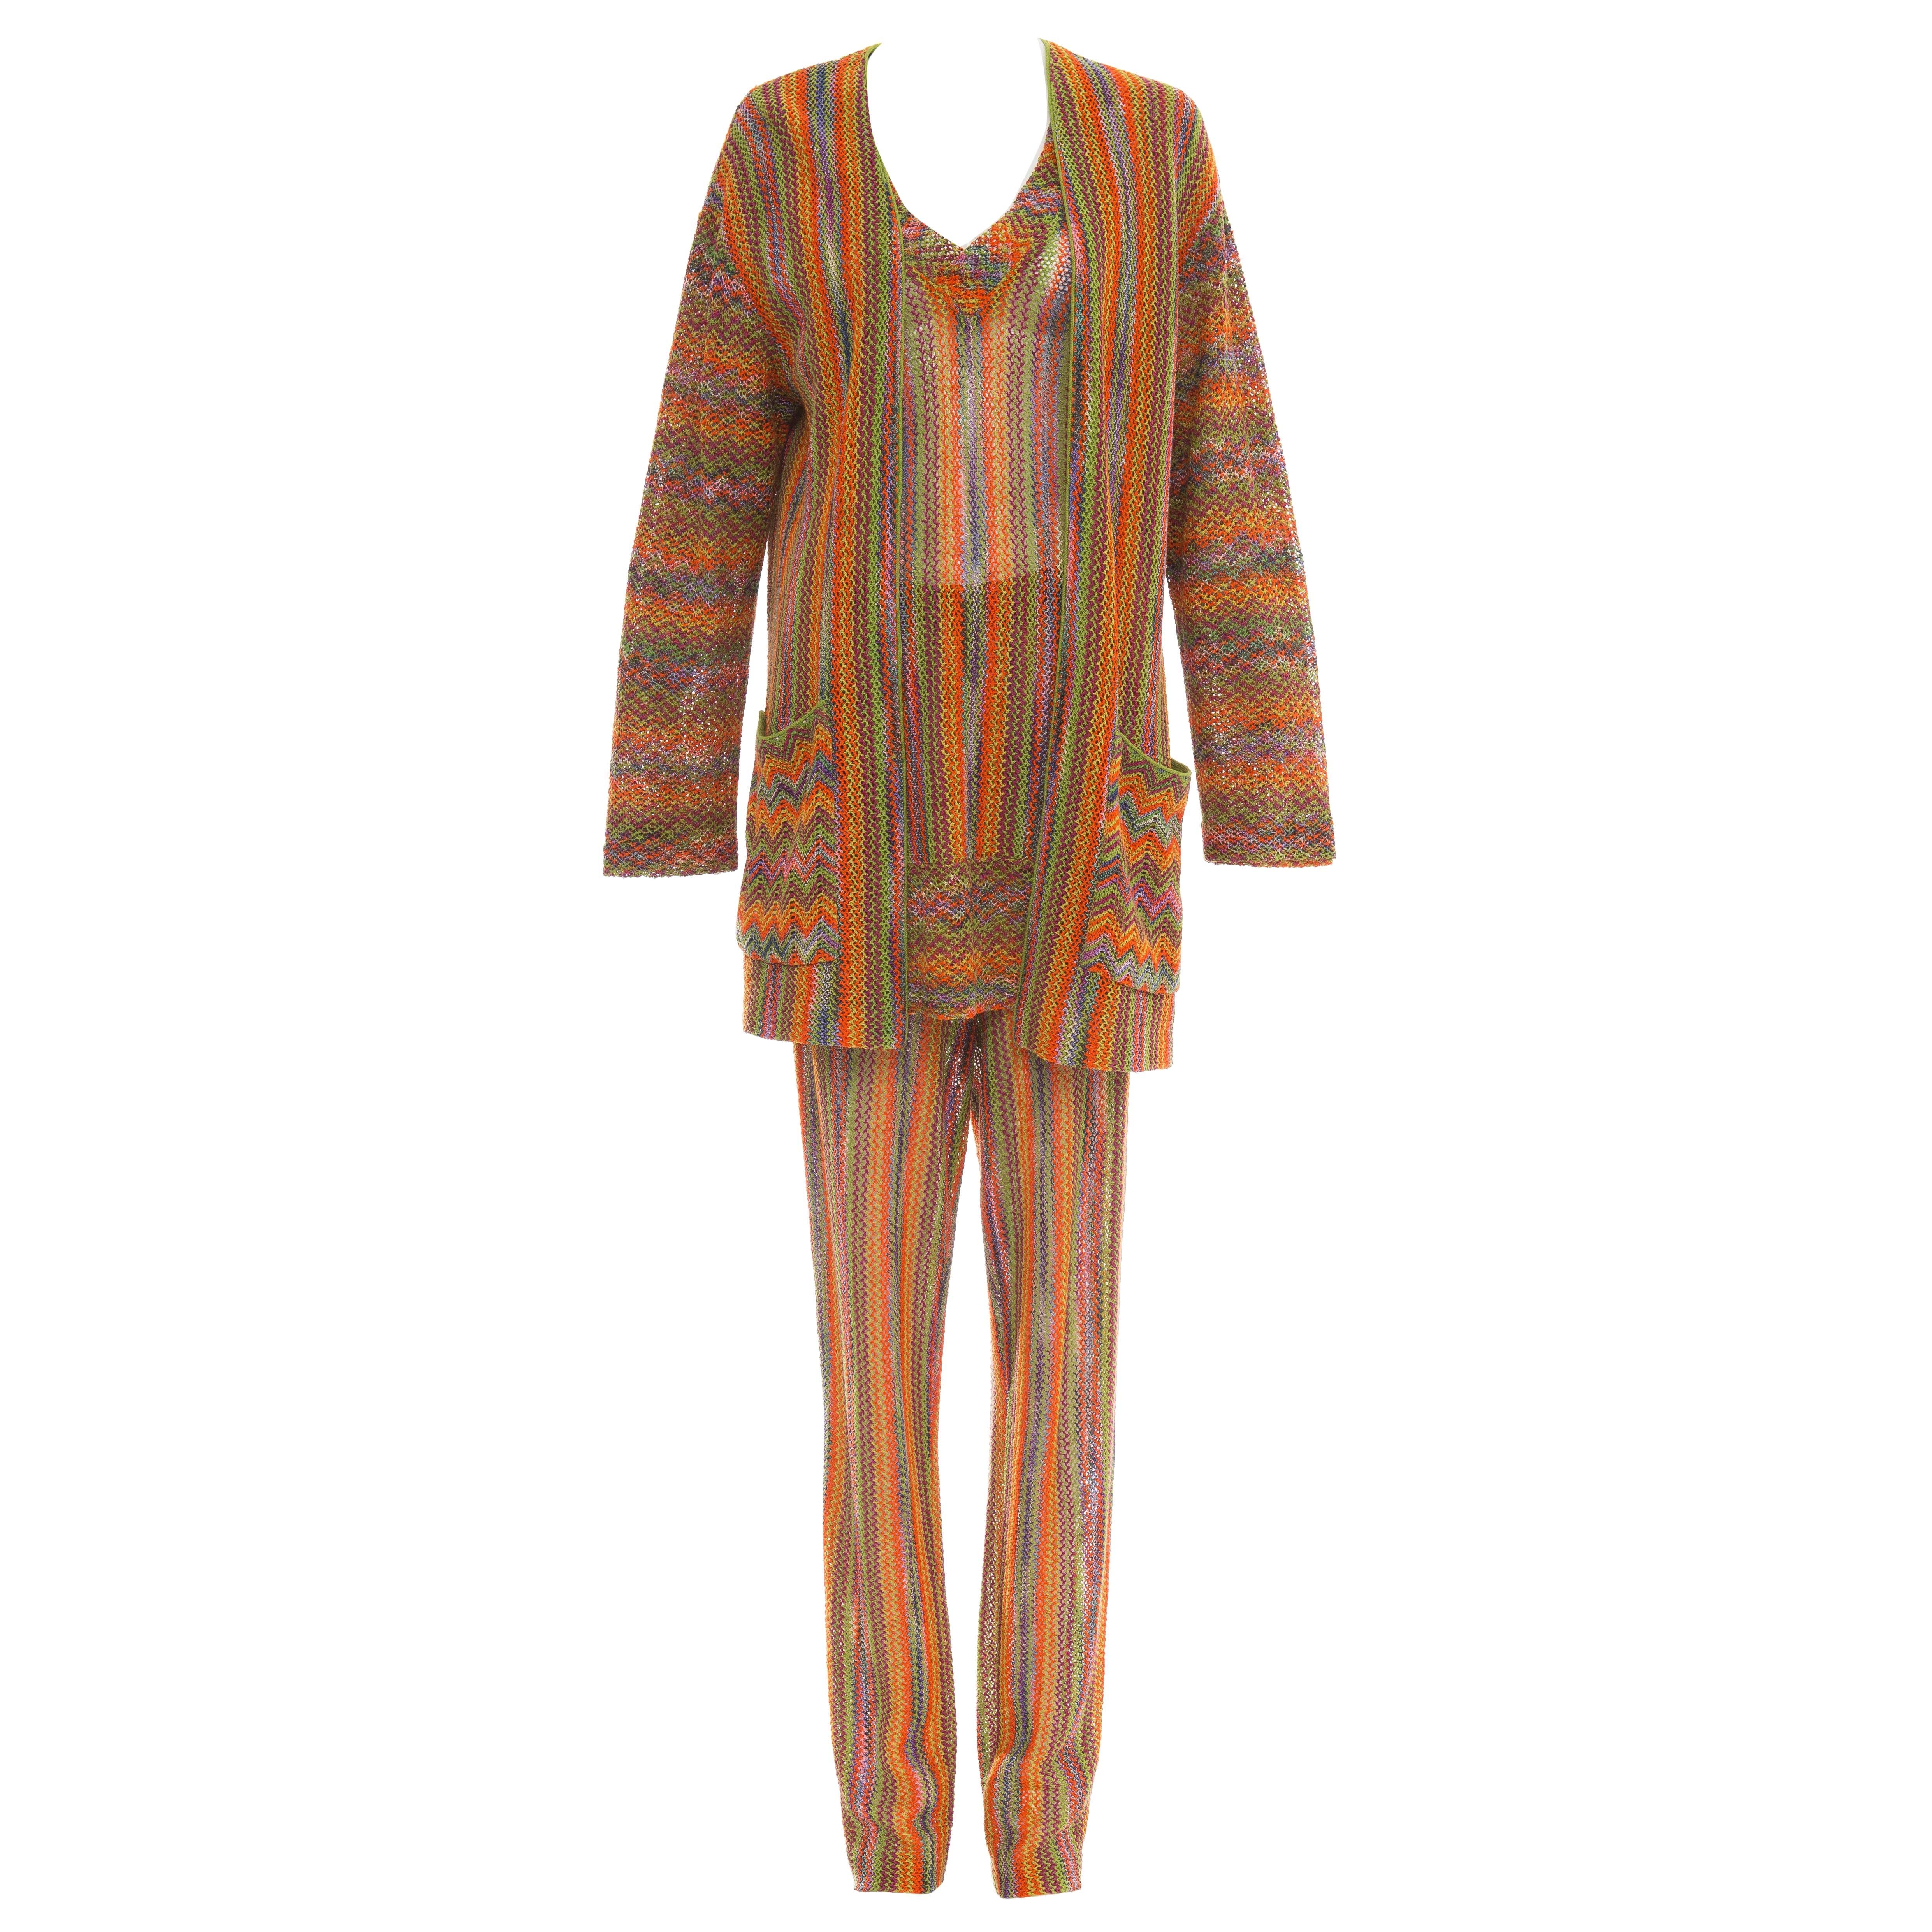 Missoni Rainbow Striped Knit Pant Suit Ensemble, Circa 1970's For Sale